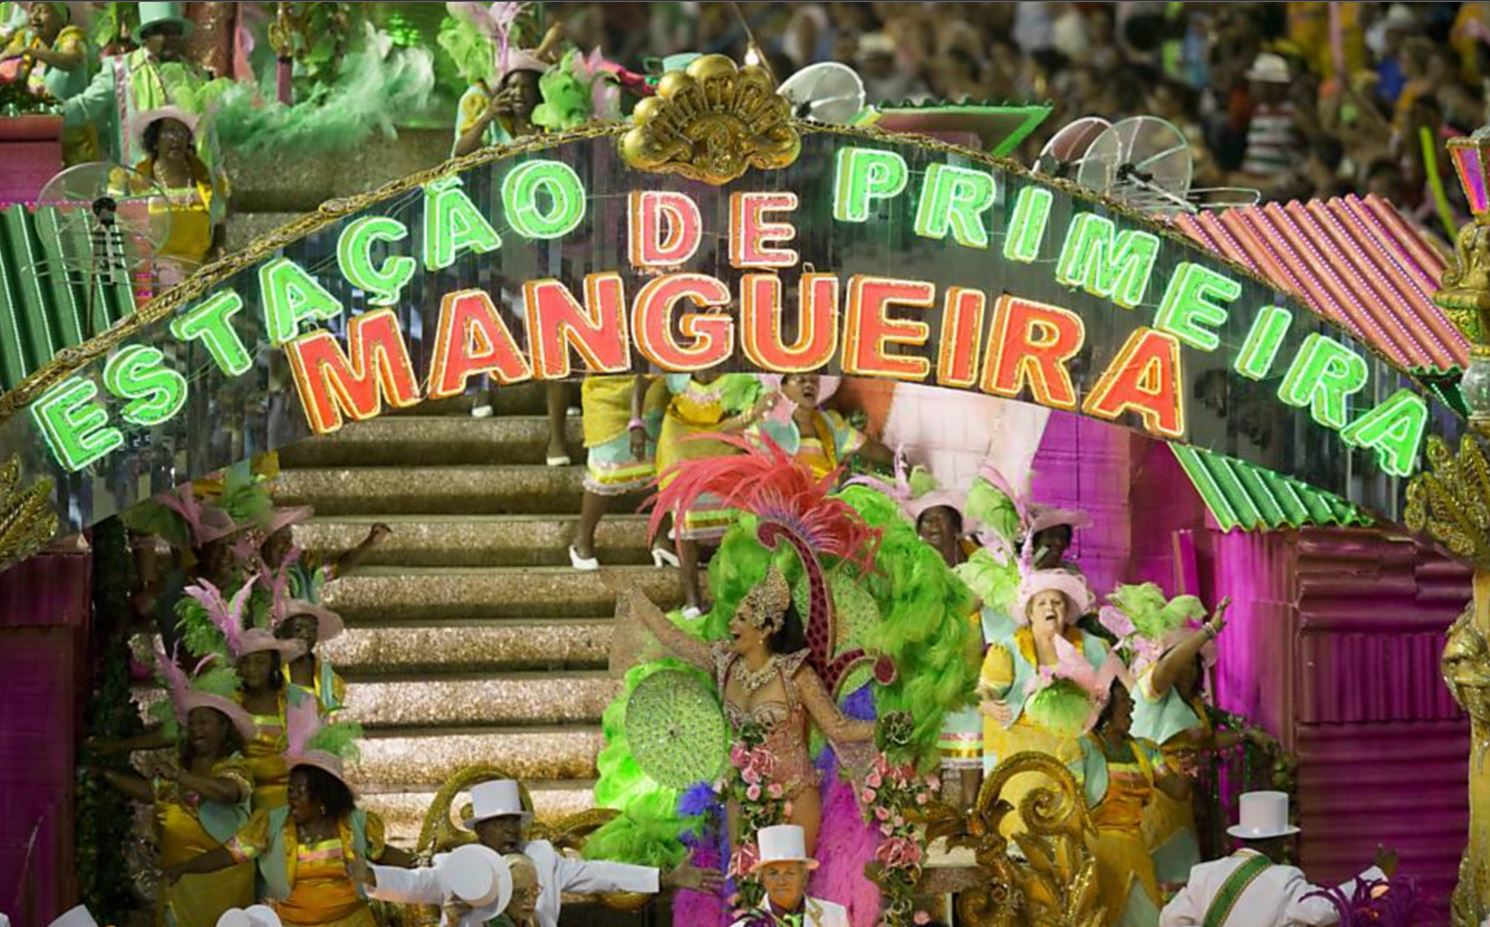 El director artístico de Mangueira, Leandro Vieira, expresó su descontento con la decisión de la escuela, cuyo desfile, dijo, levantó la bandera de "la comunión y la no intolerancia". (Redes sociales)